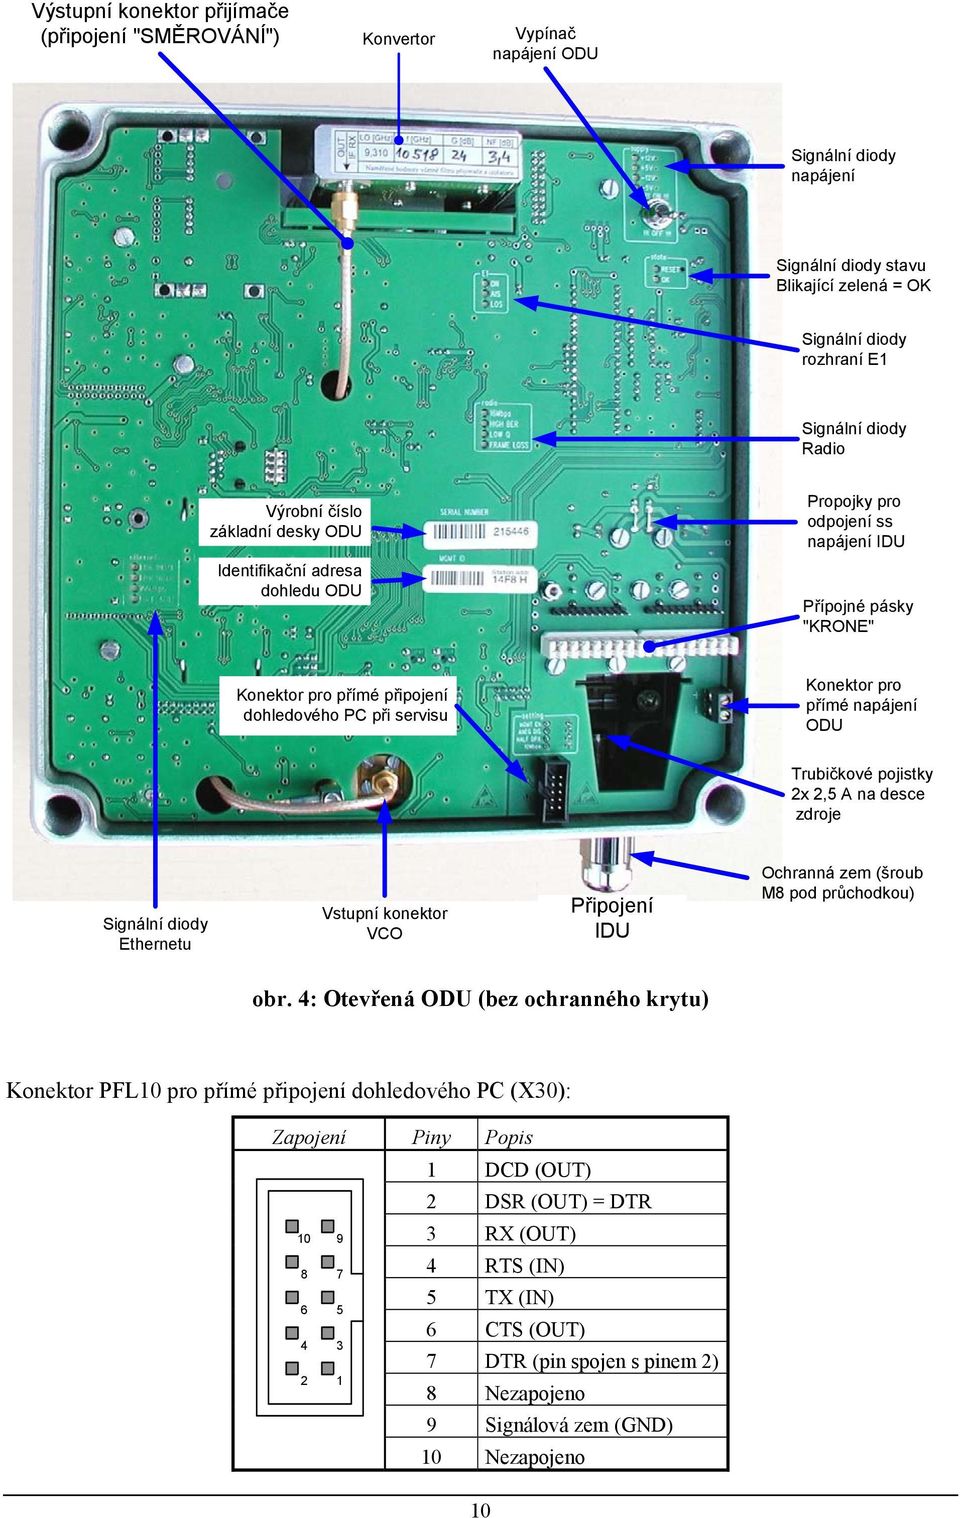 přímé napájení ODU Trubičkové pojistky 2x 2,5 A na desce zdroje Signální diody Ethernetu Vstupní konektor VCO Připojení IDU Ochranná zem (šroub M8 pod průchodkou) obr.